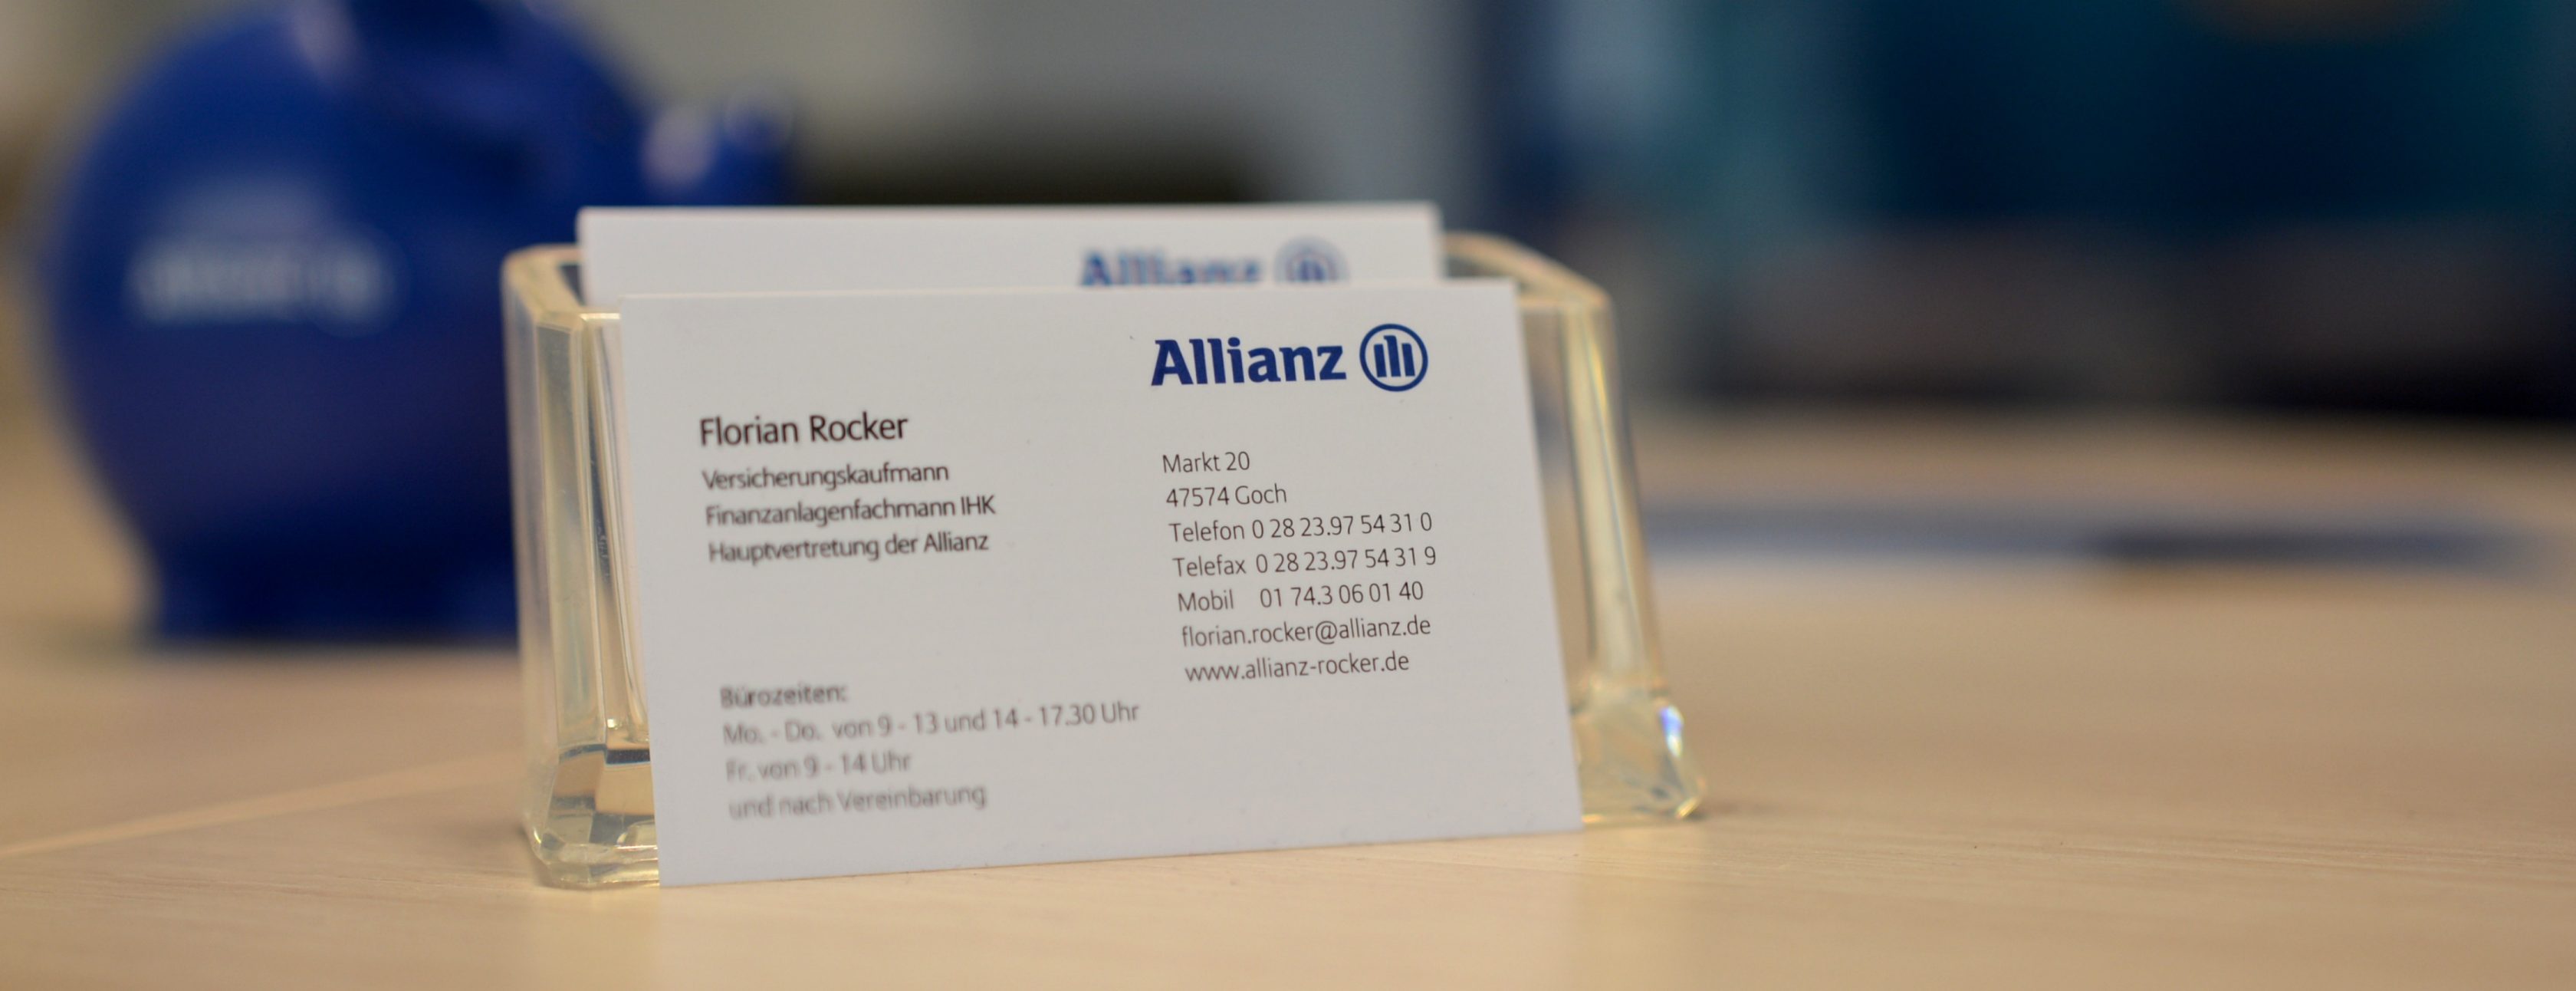 Allianz Versicherung Florian Rocker Goch - Visitenkarte